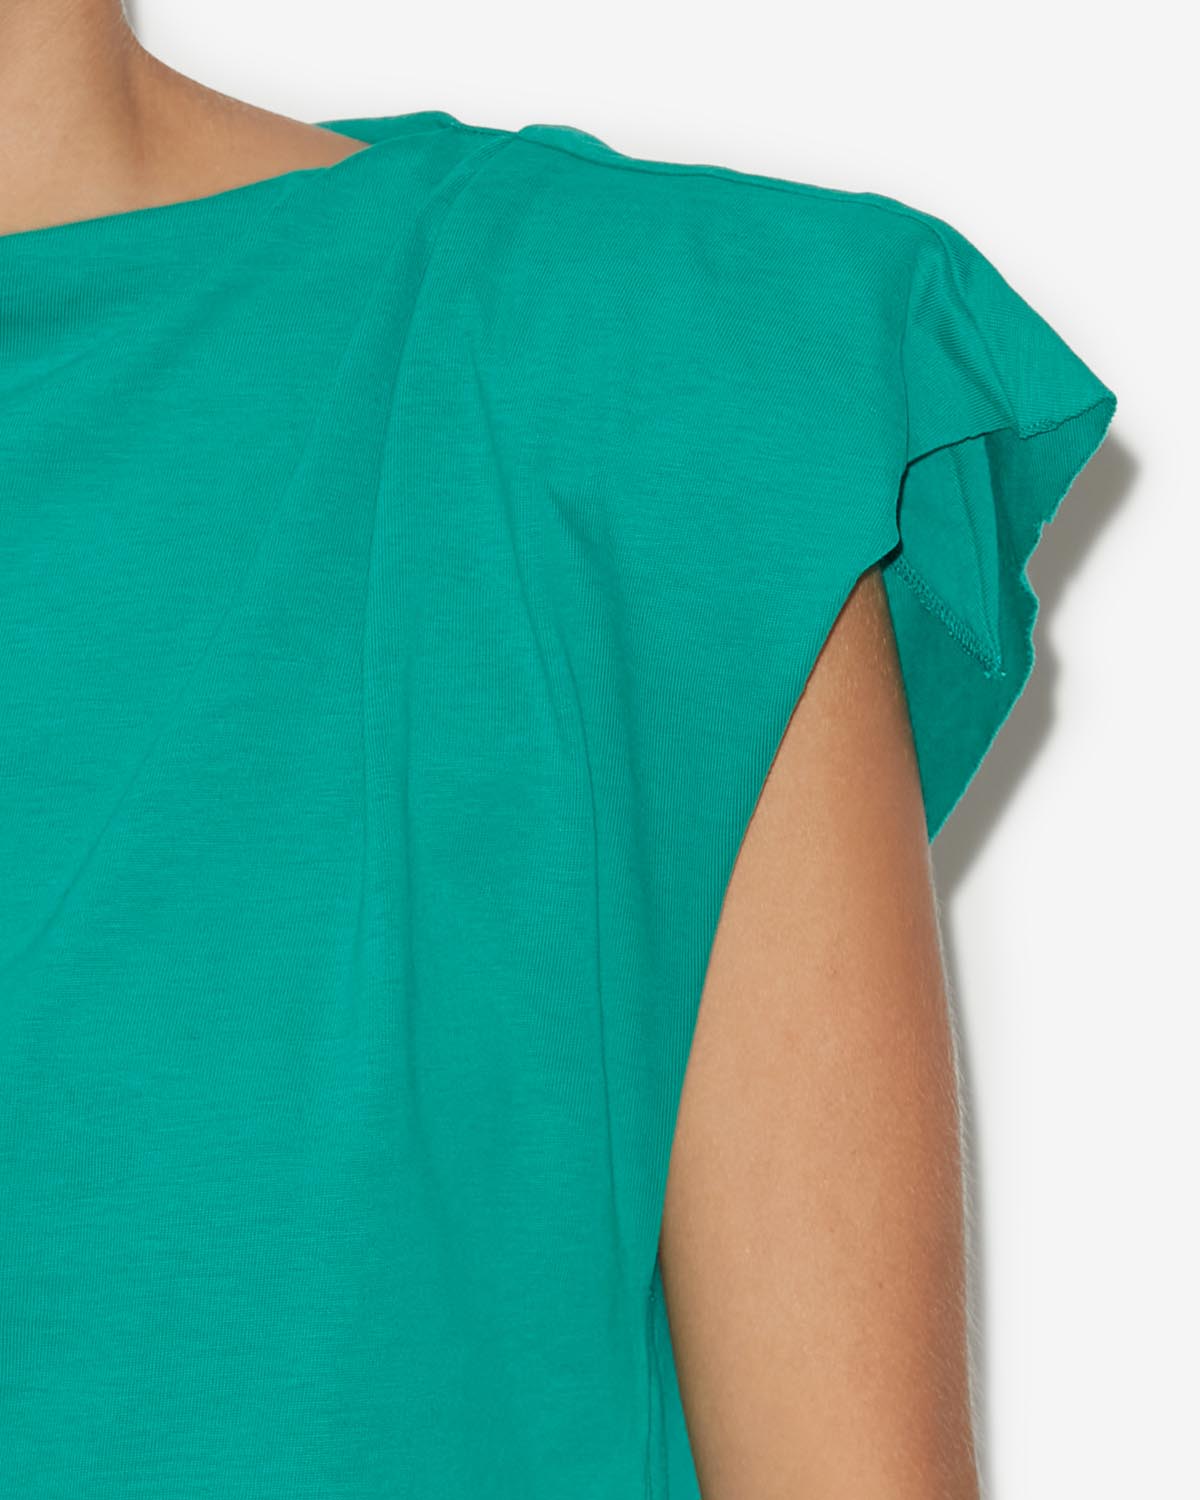 Sebani 티 셔츠 Woman Green 3